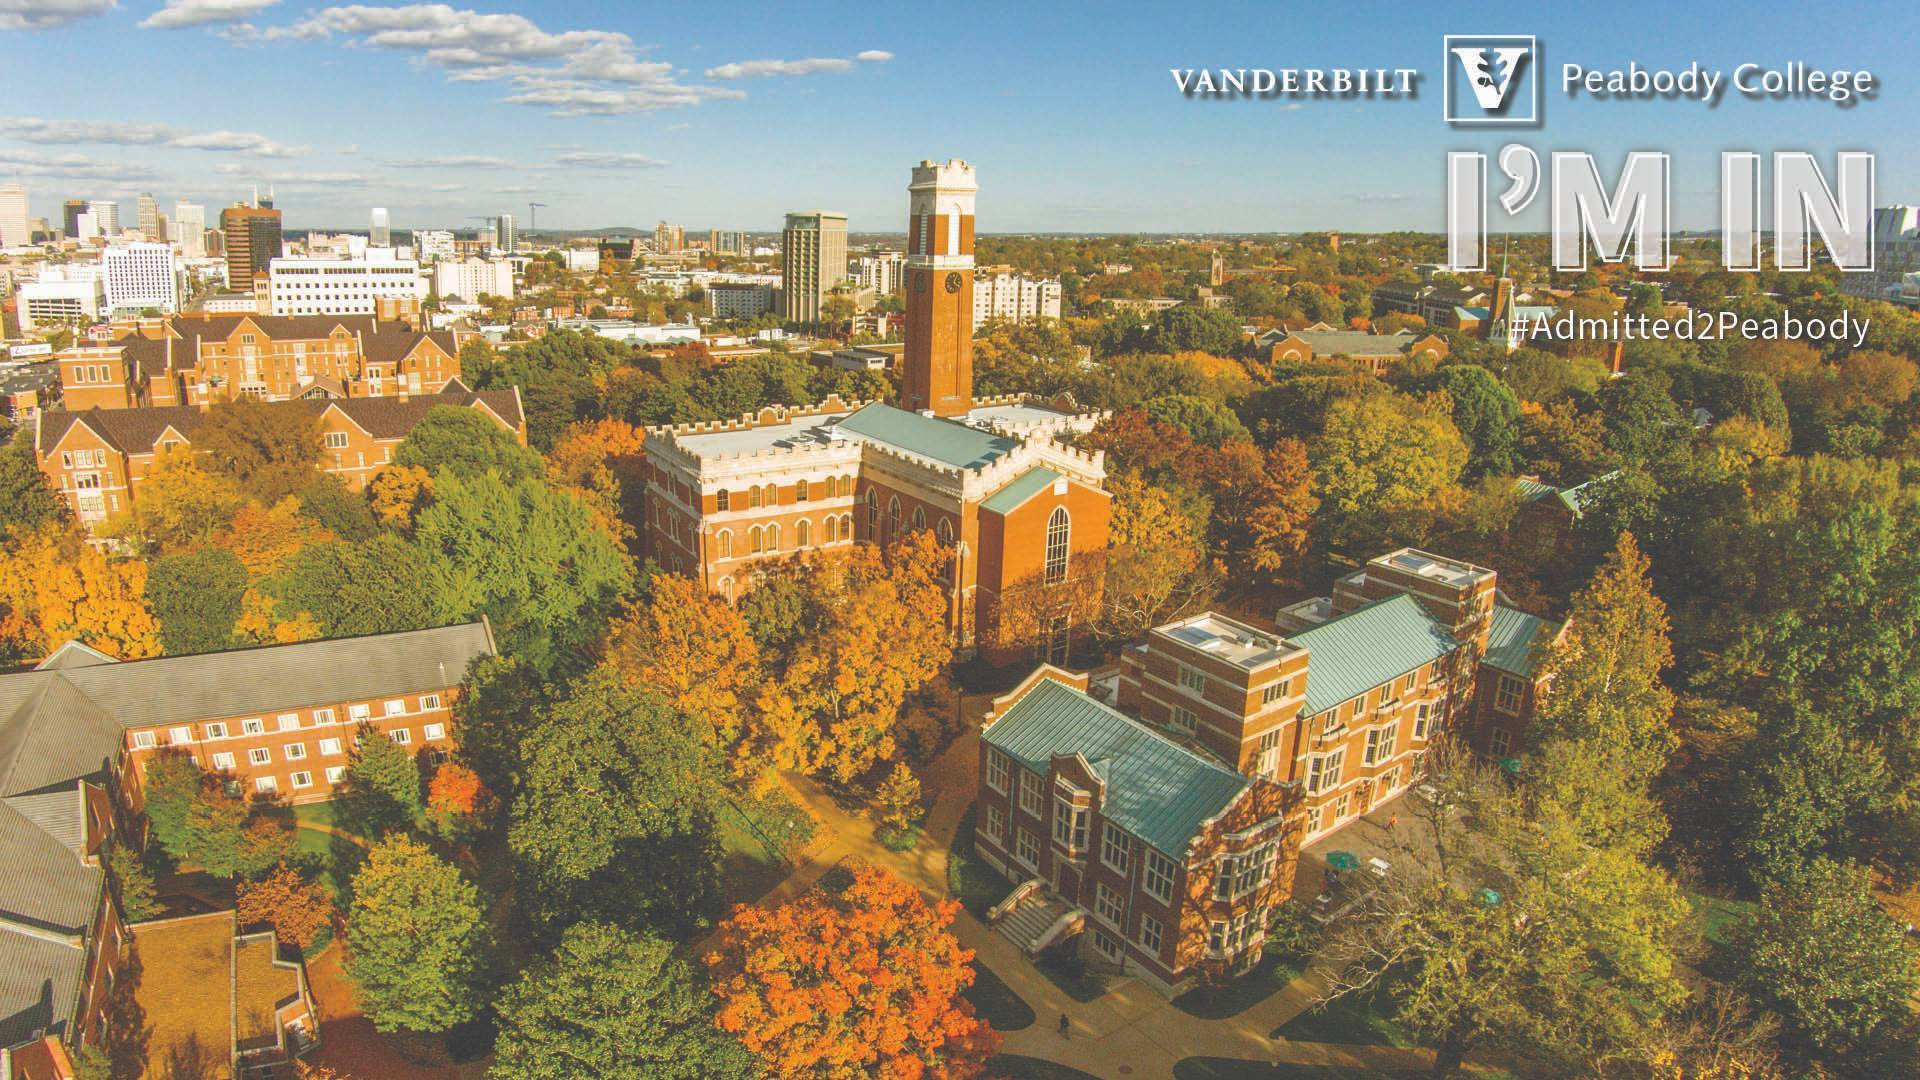 Campusda Universidade Vanderbilt, Onde Estou. Papel de Parede